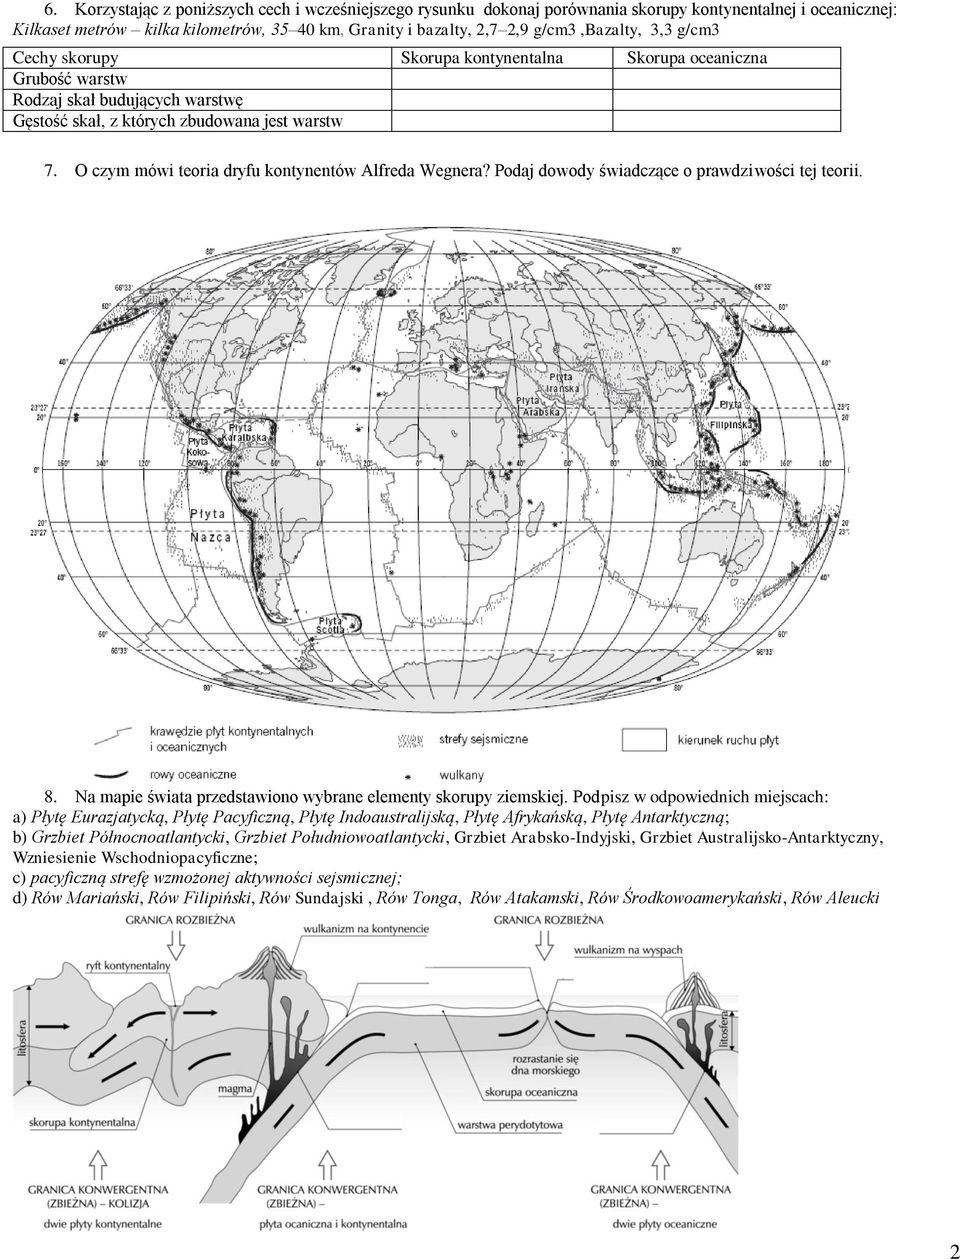 O czym mówi teoria dryfu kontynentów Alfreda Wegnera? Podaj dowody świadczące o prawdziwości tej teorii. 8. Na mapie świata przedstawiono wybrane elementy skorupy ziemskiej.